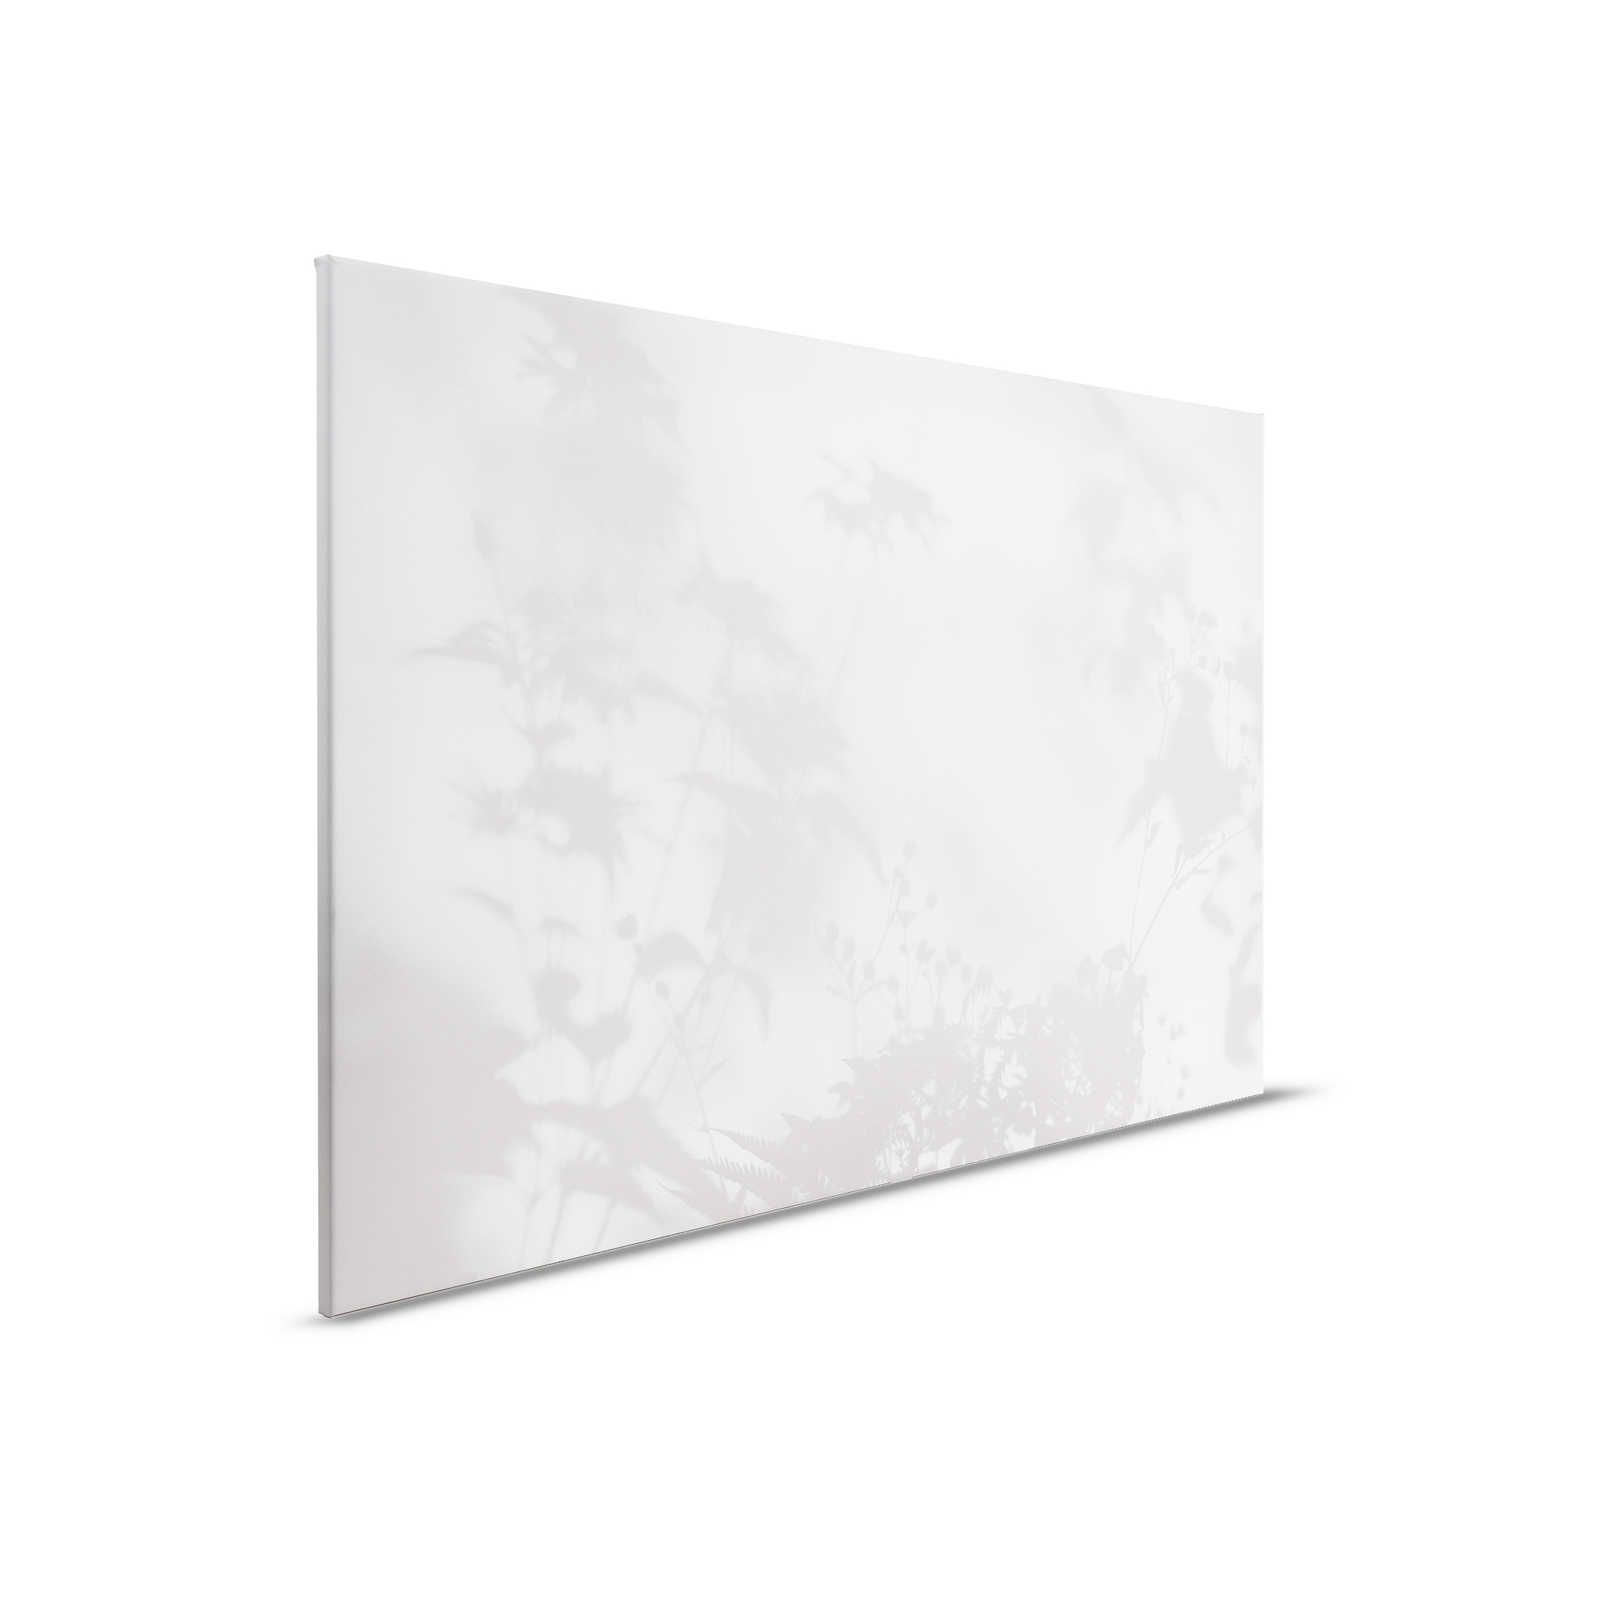 Camera d'ombra 2 - Quadro su tela naturale grigio e bianco, disegno sbiadito - 0,90 m x 0,60 m
